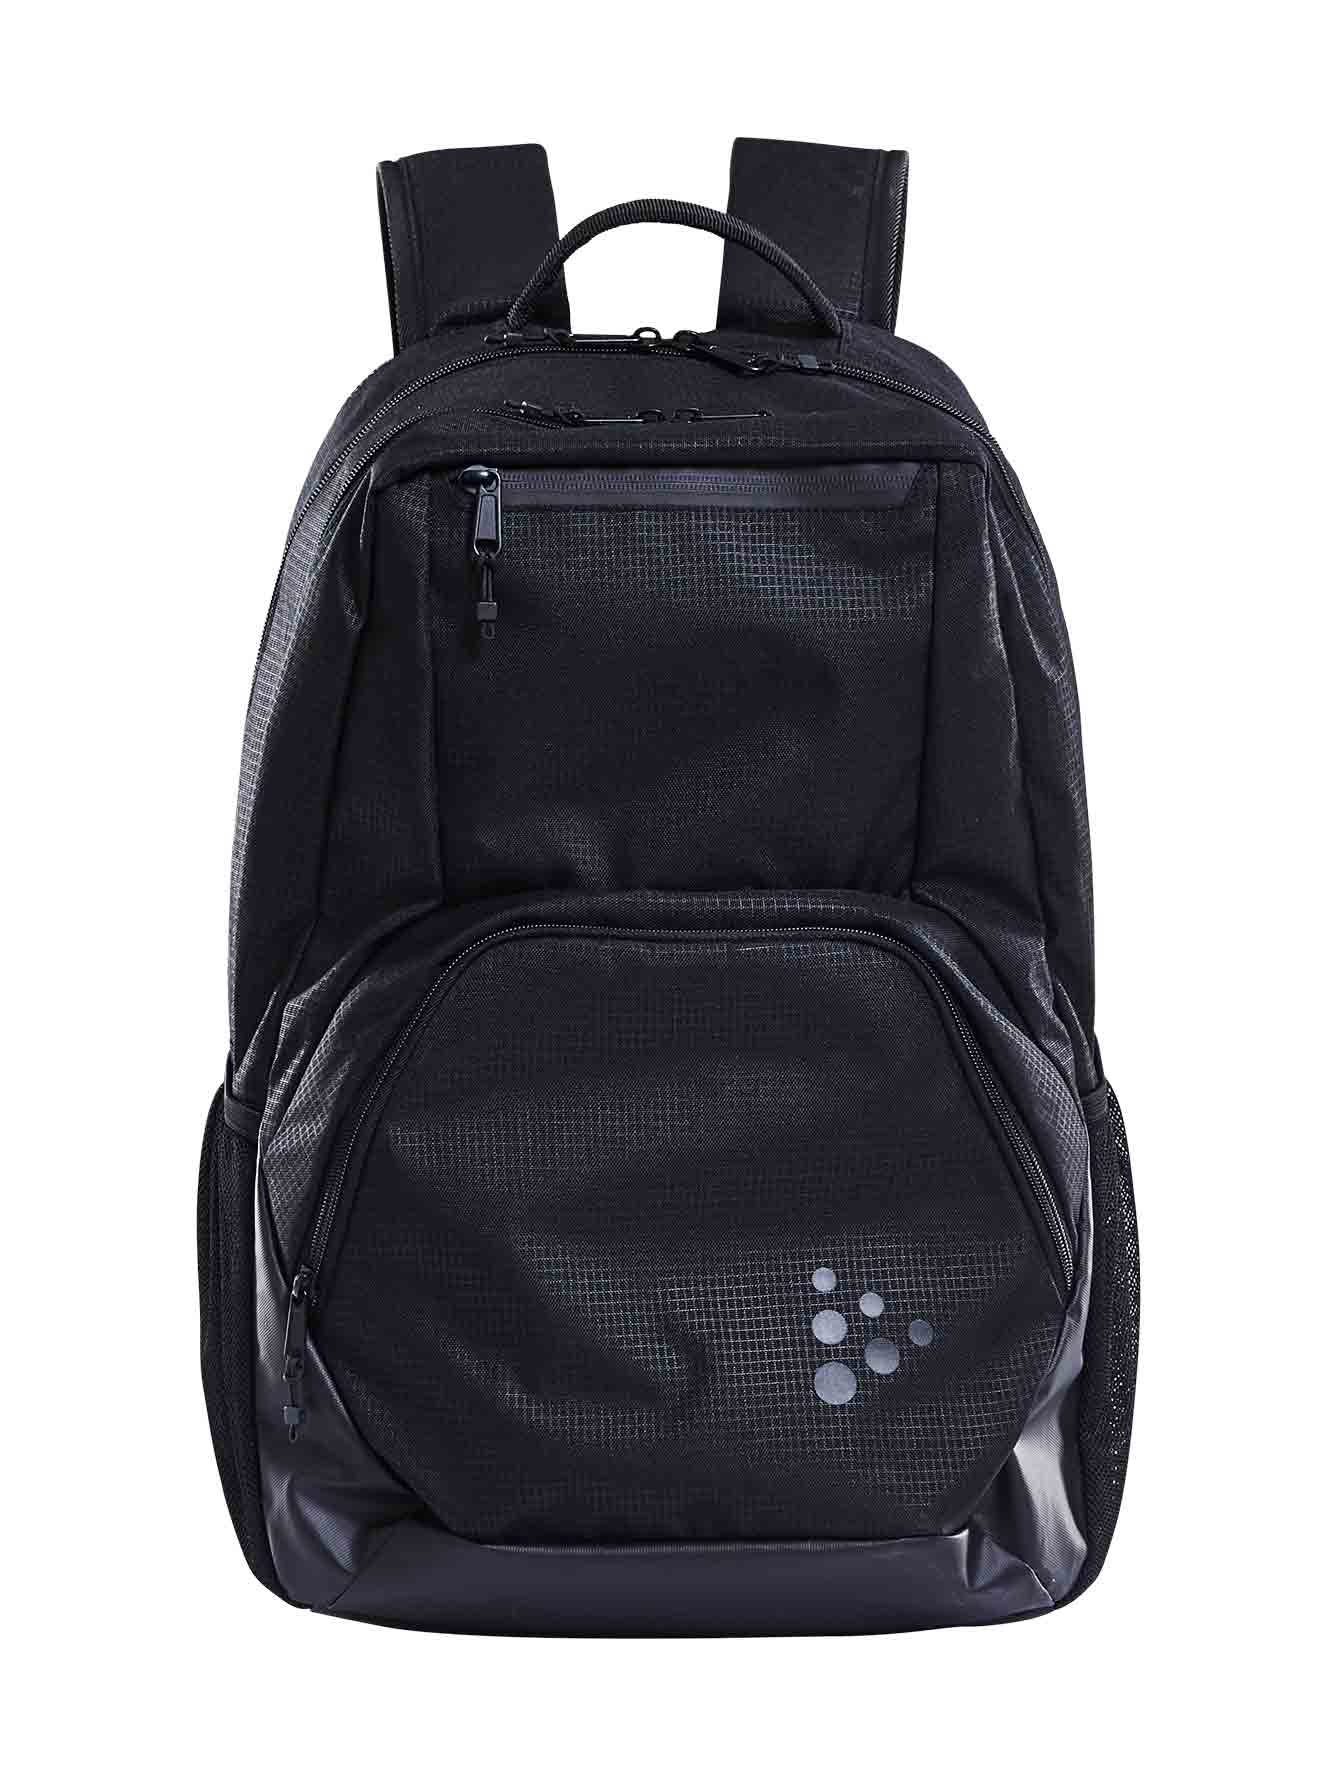 Transit 35L Backpack Black